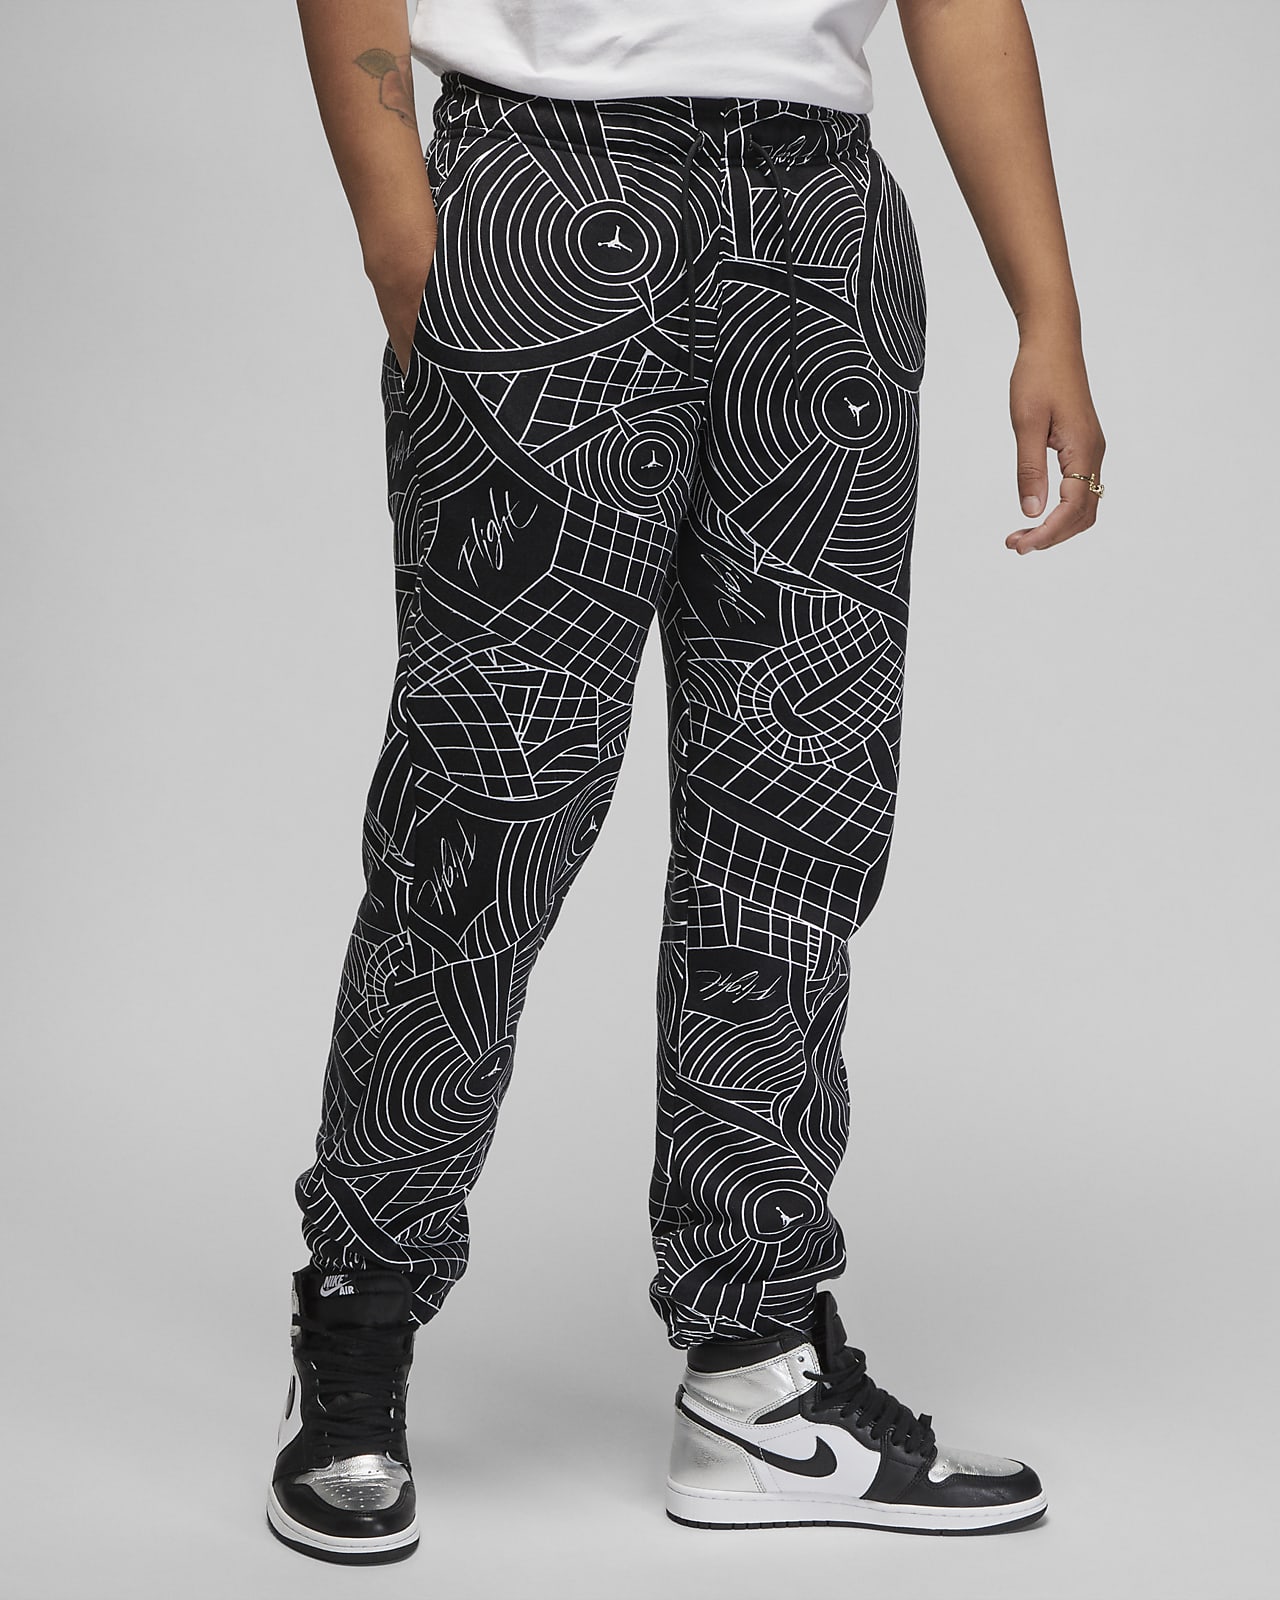 total microondas Desigualdad Jordan Brooklyn Pantalón de tejido Fleece - Mujer. Nike ES